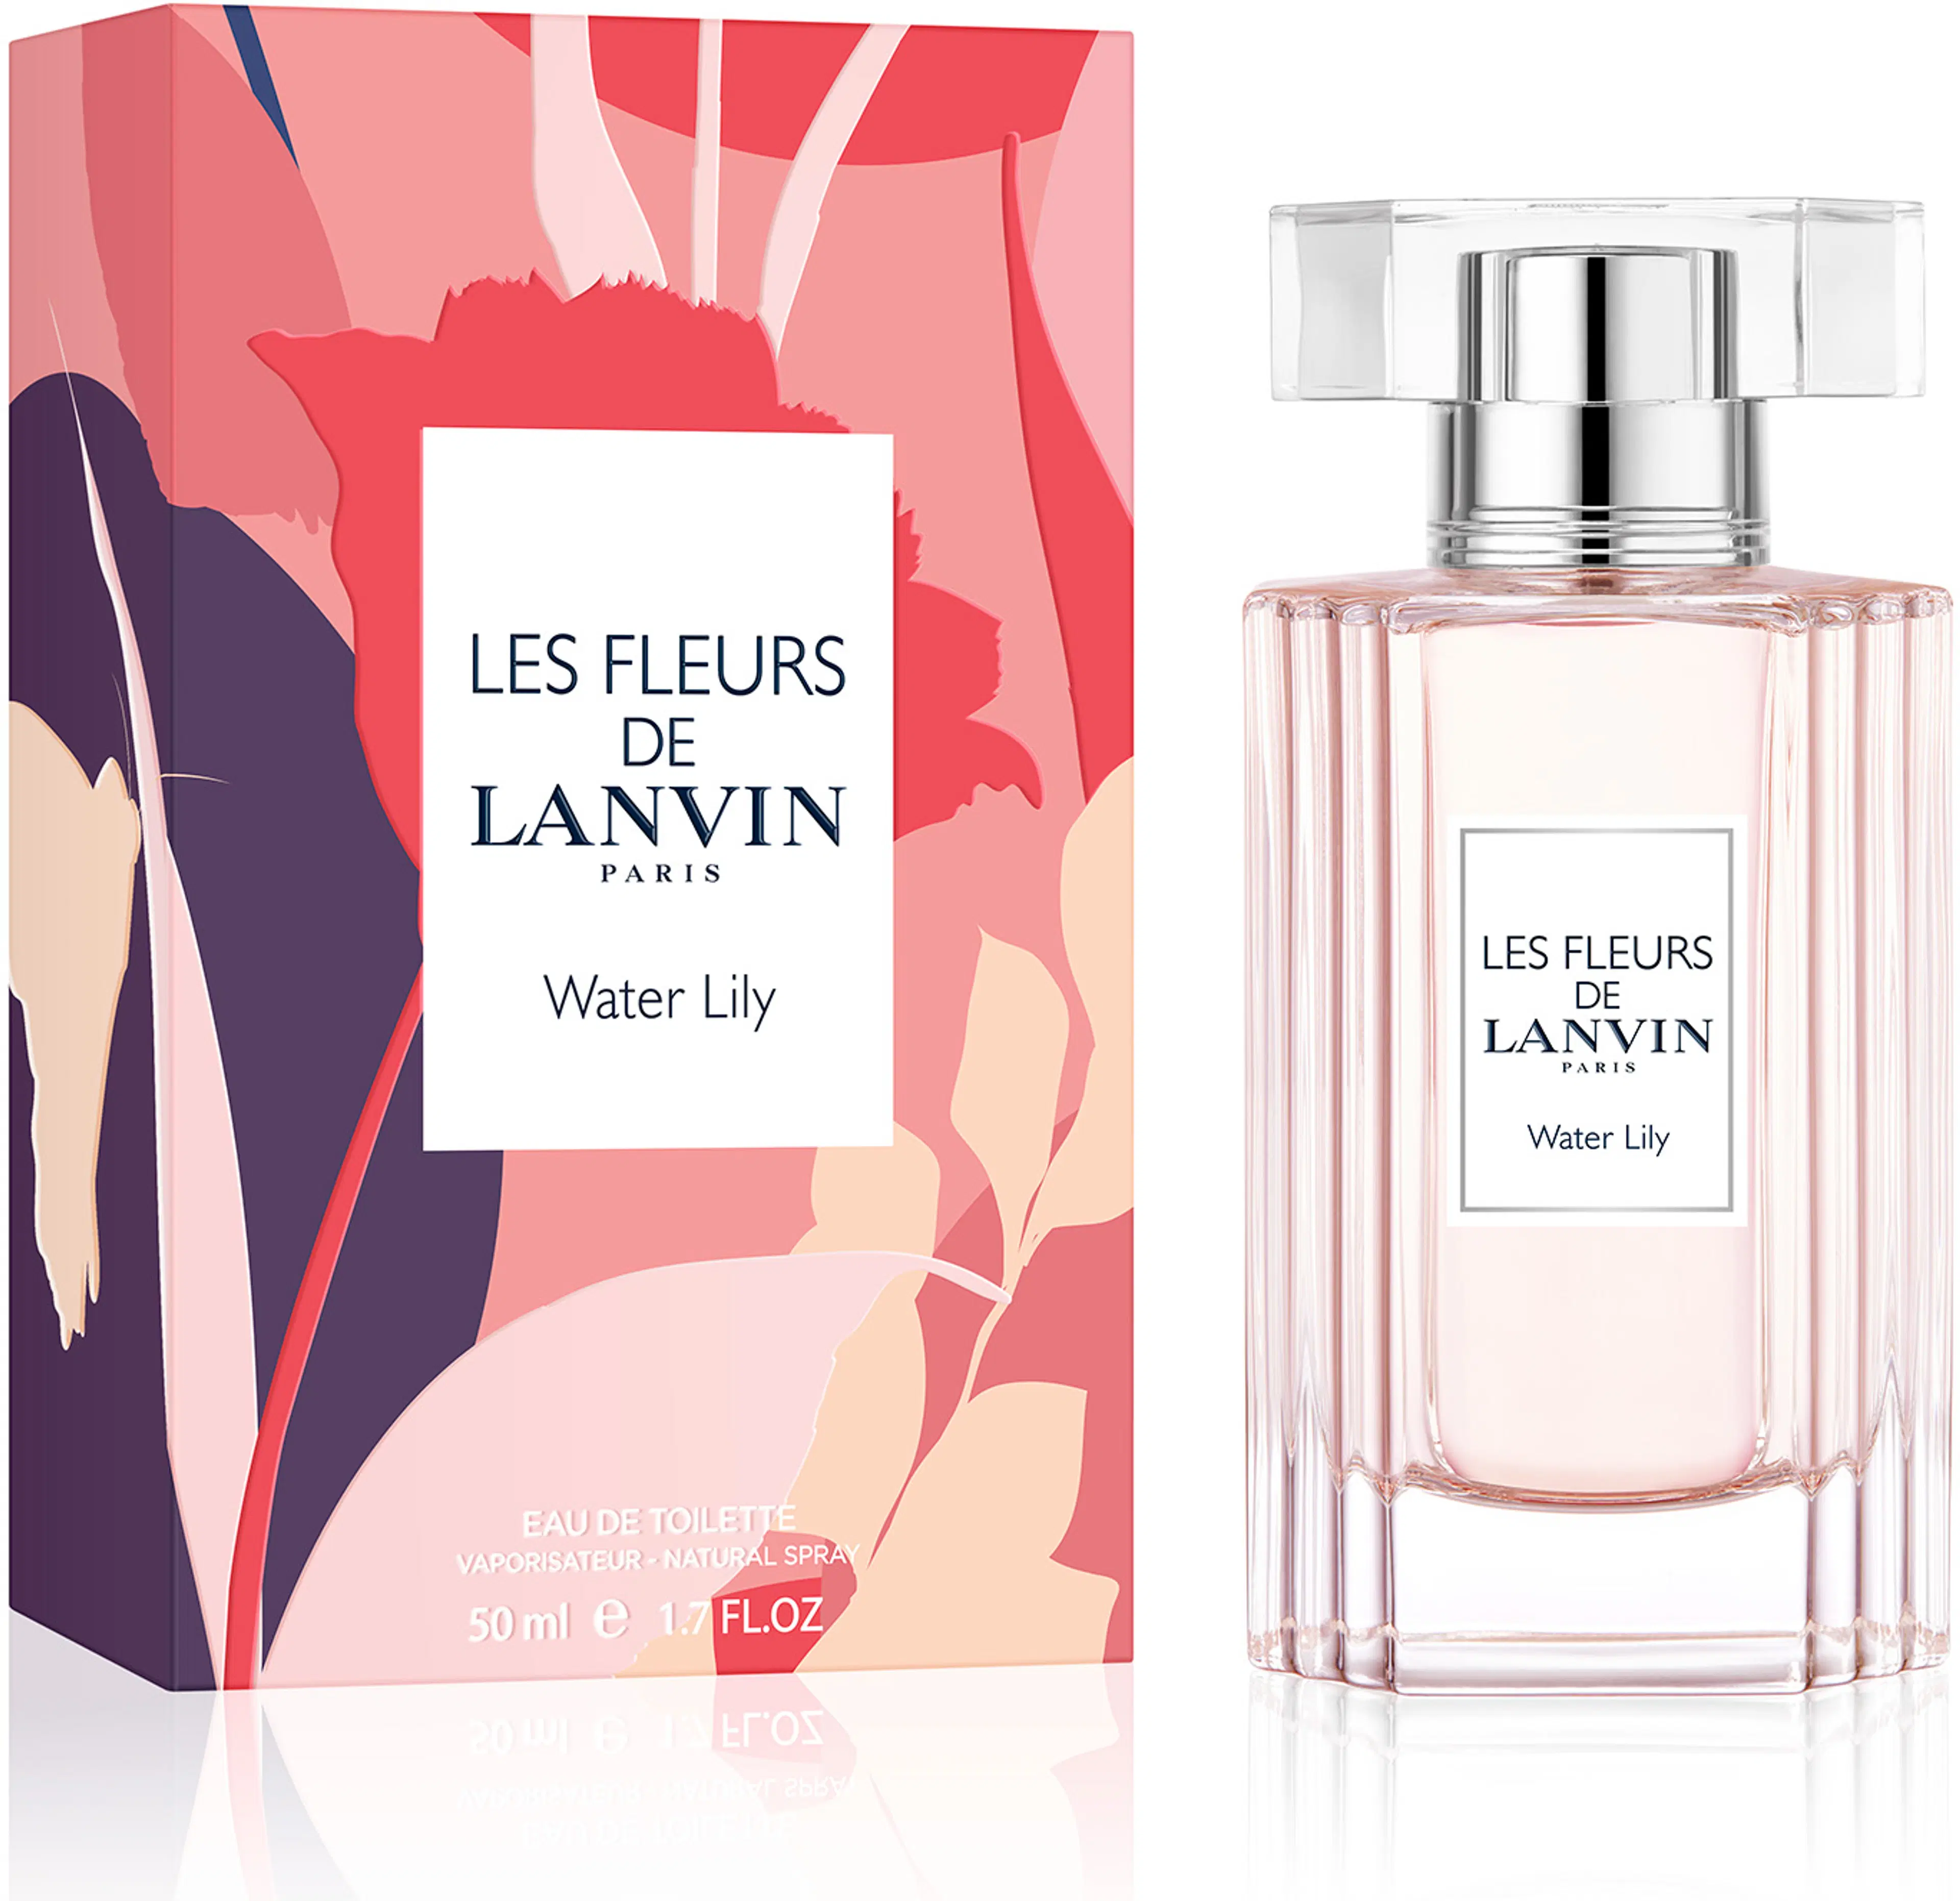 Lanvin Les Fleurs de Lanvin Water Lily EdT tuoksu 50 ml